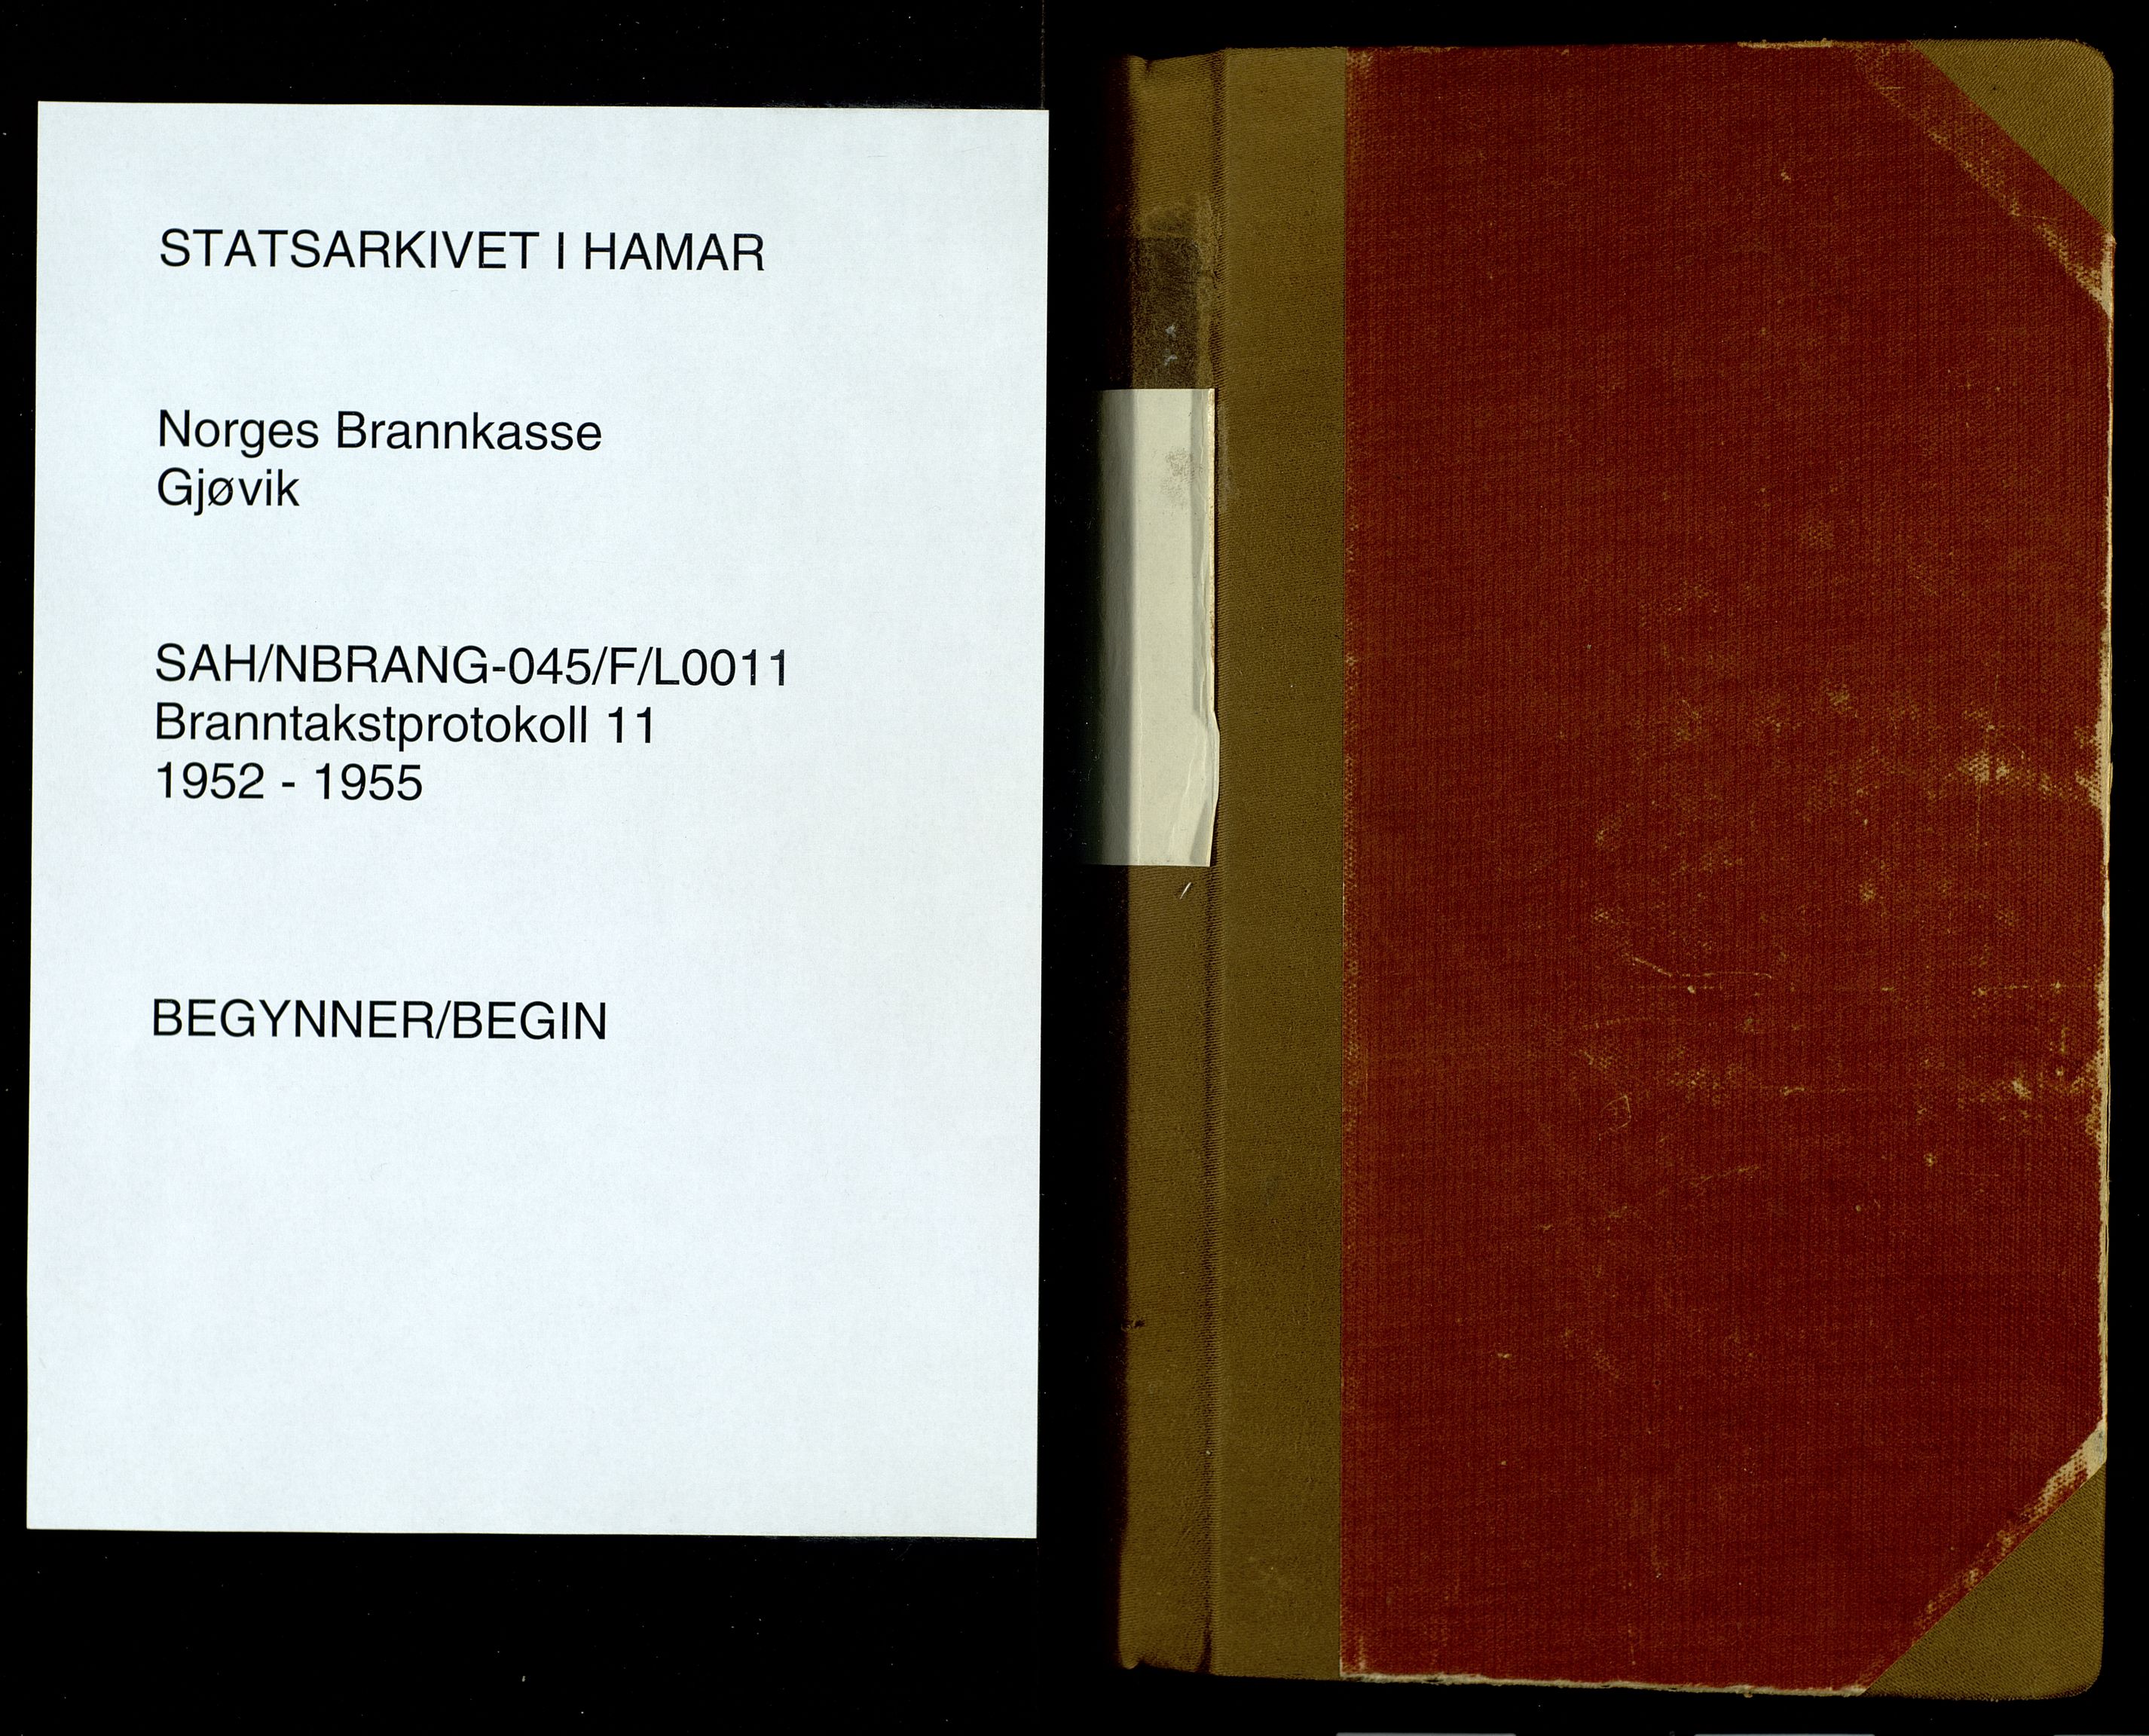 Norges Brannkasse, Gjøvik, SAH/NBRANG-045/F/L0011: Branntakstprotokoll, 1952-1955